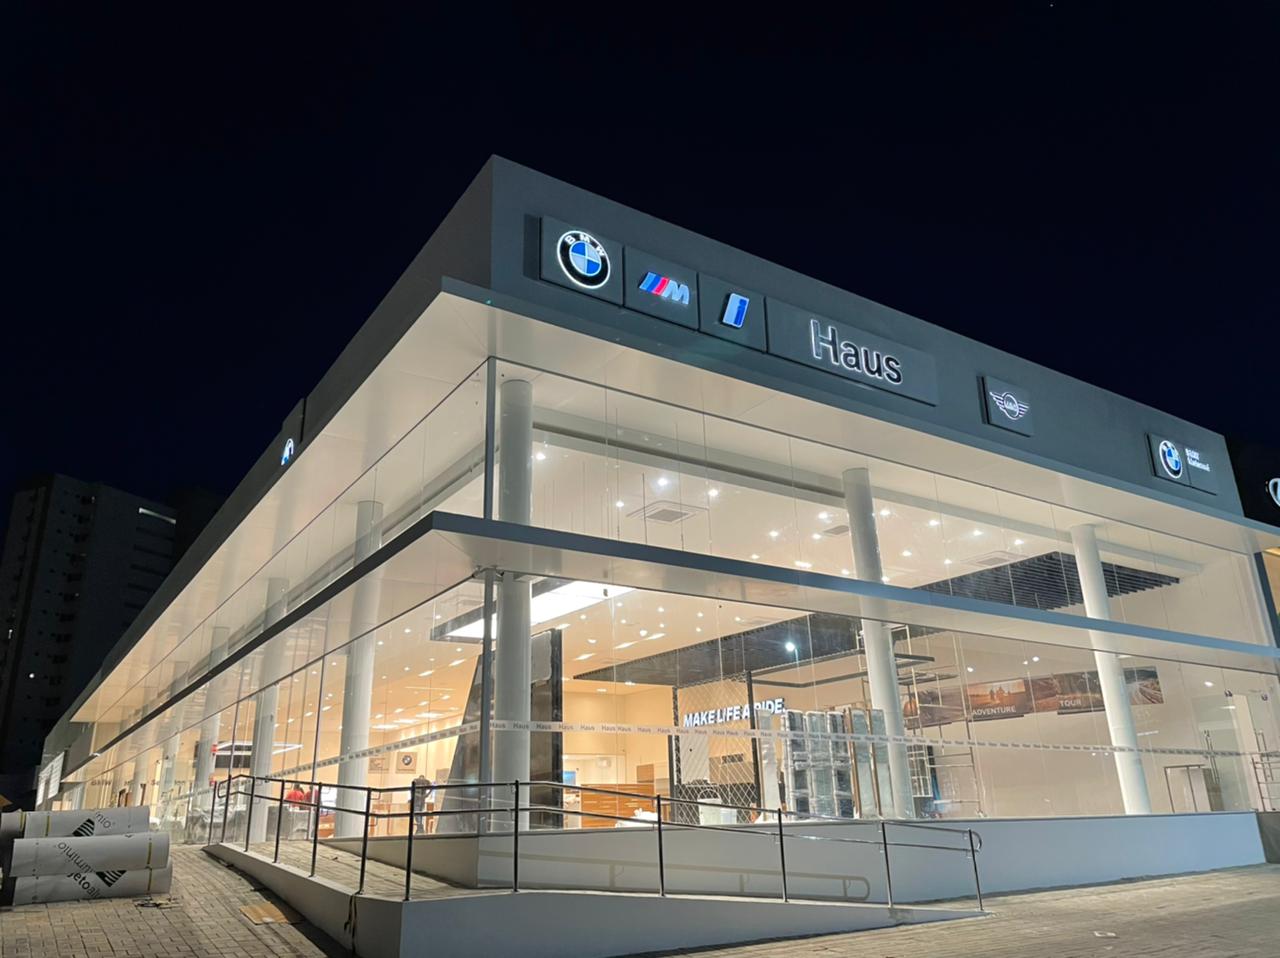 De endereço novo, Concessionária Haus Fortaleza espera fazer ótimos negócios com a BMW e Mini